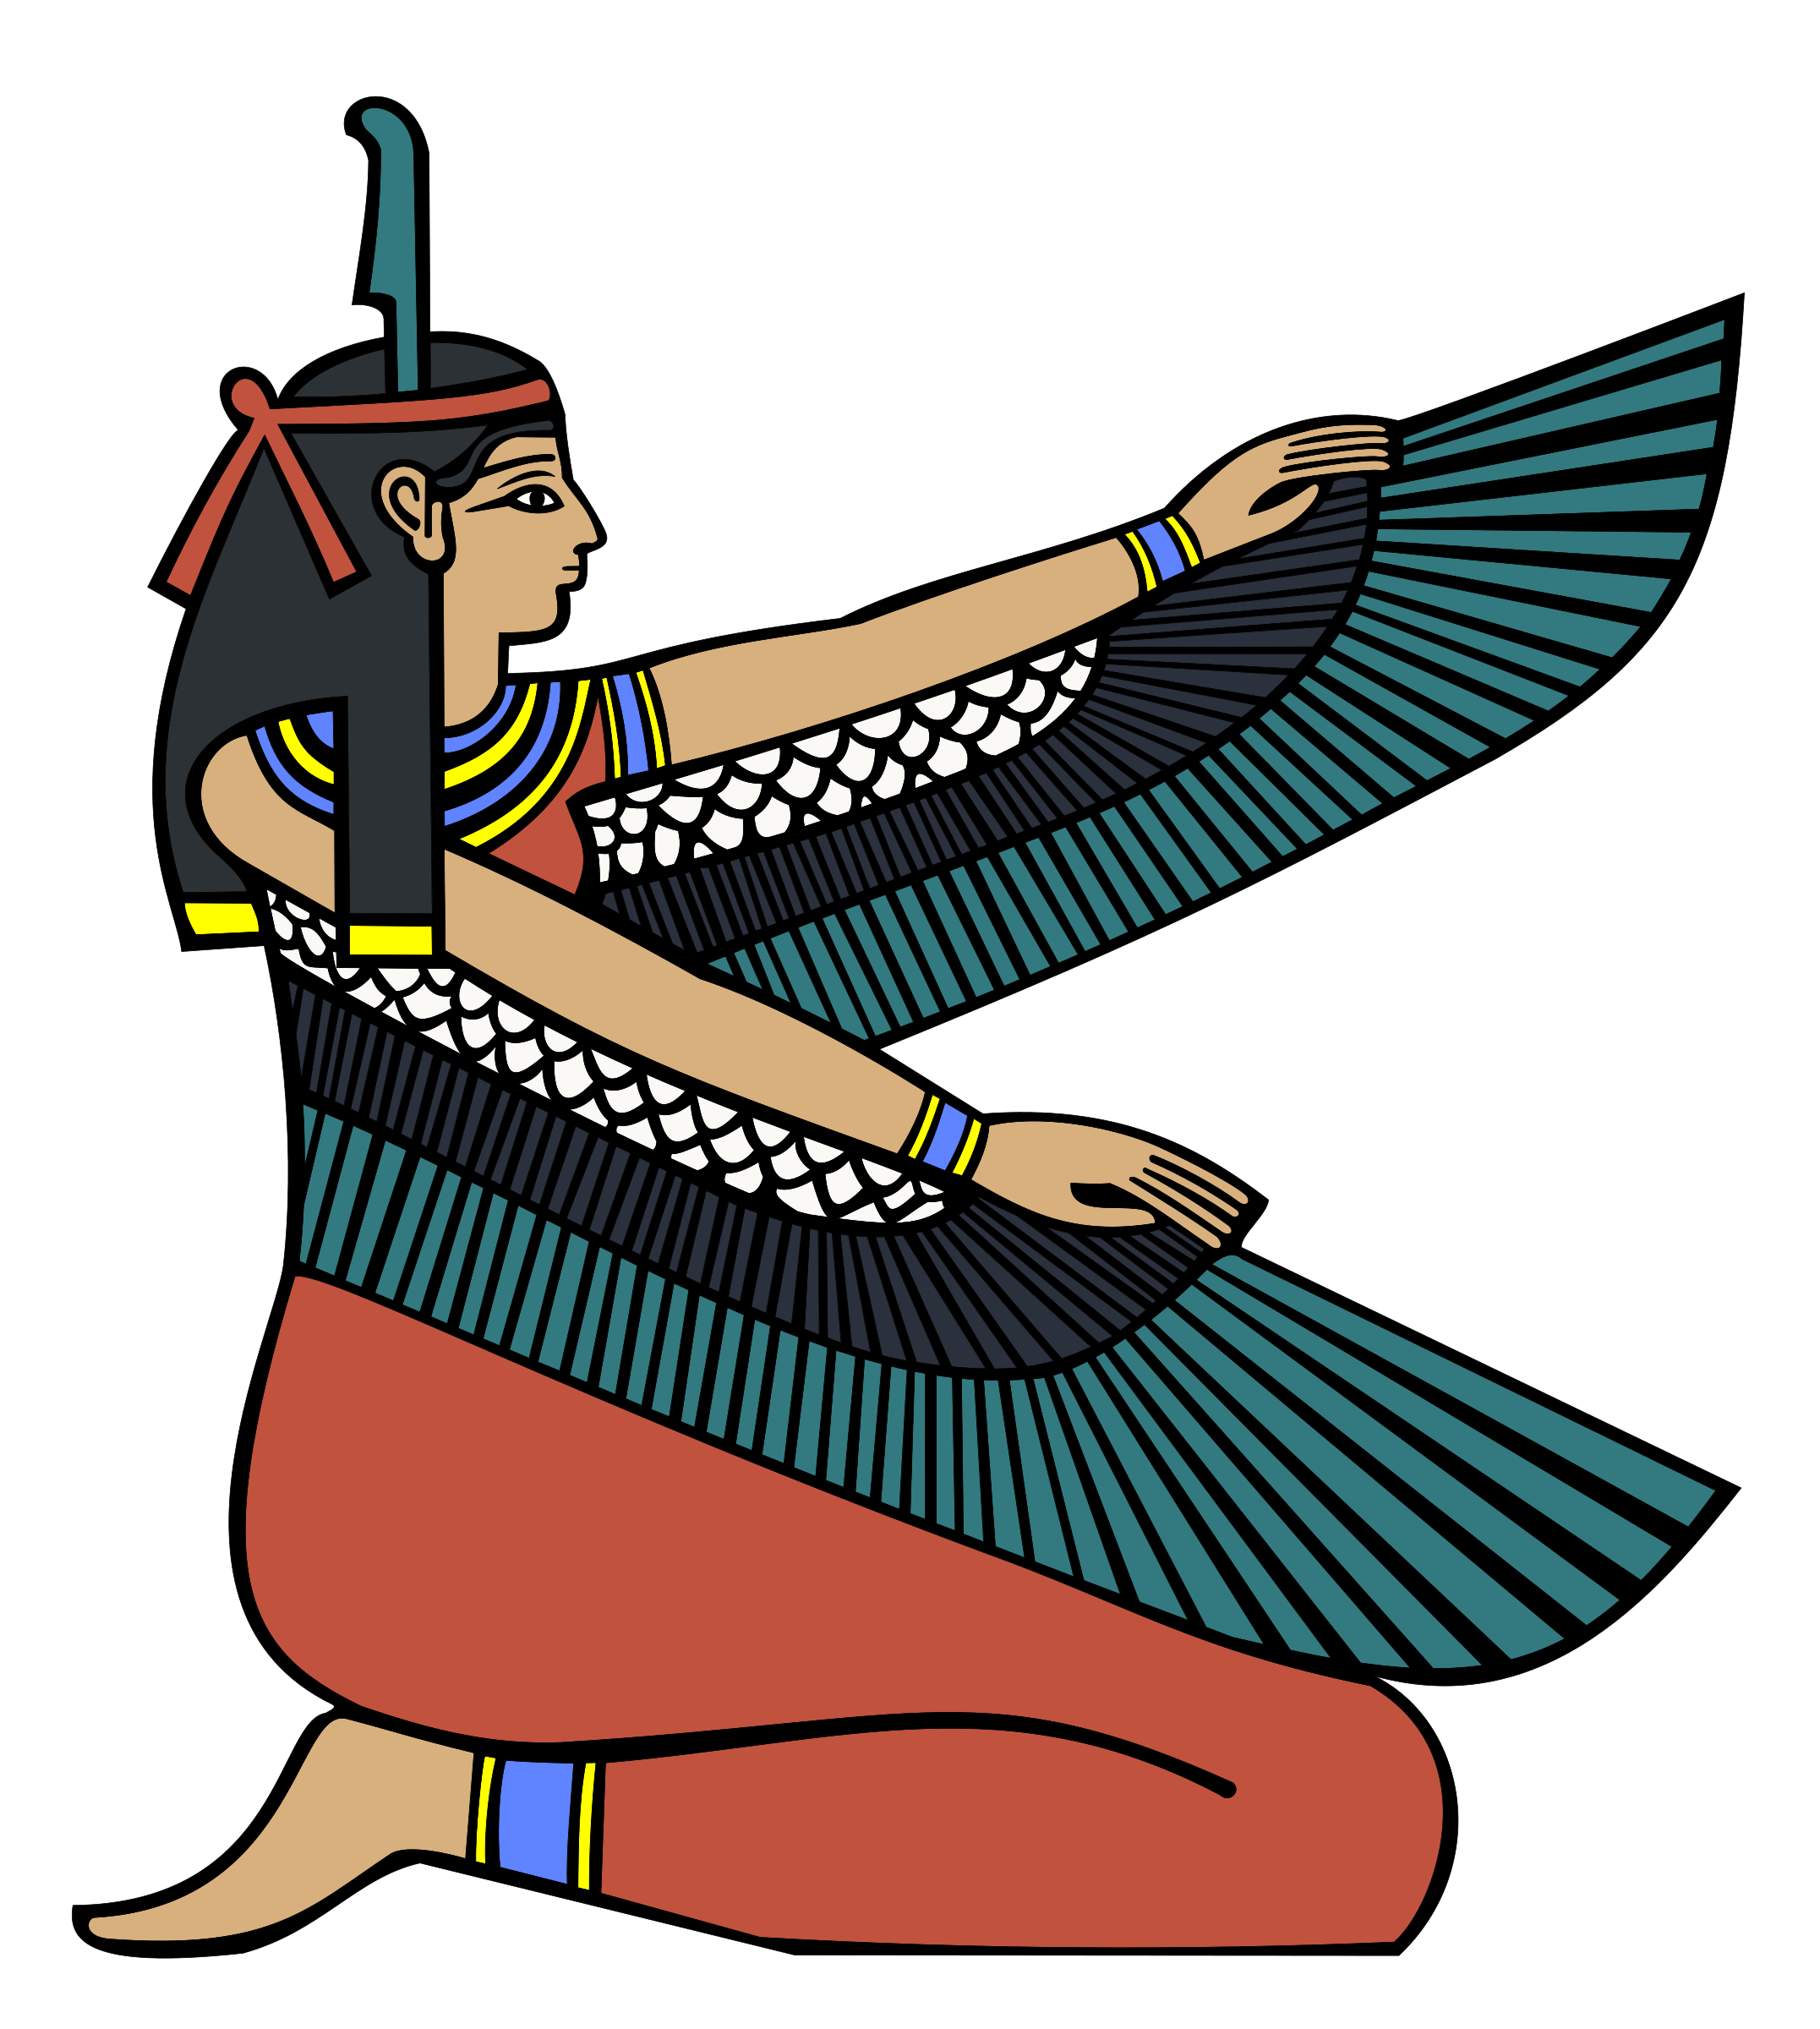 egypt clipart logo